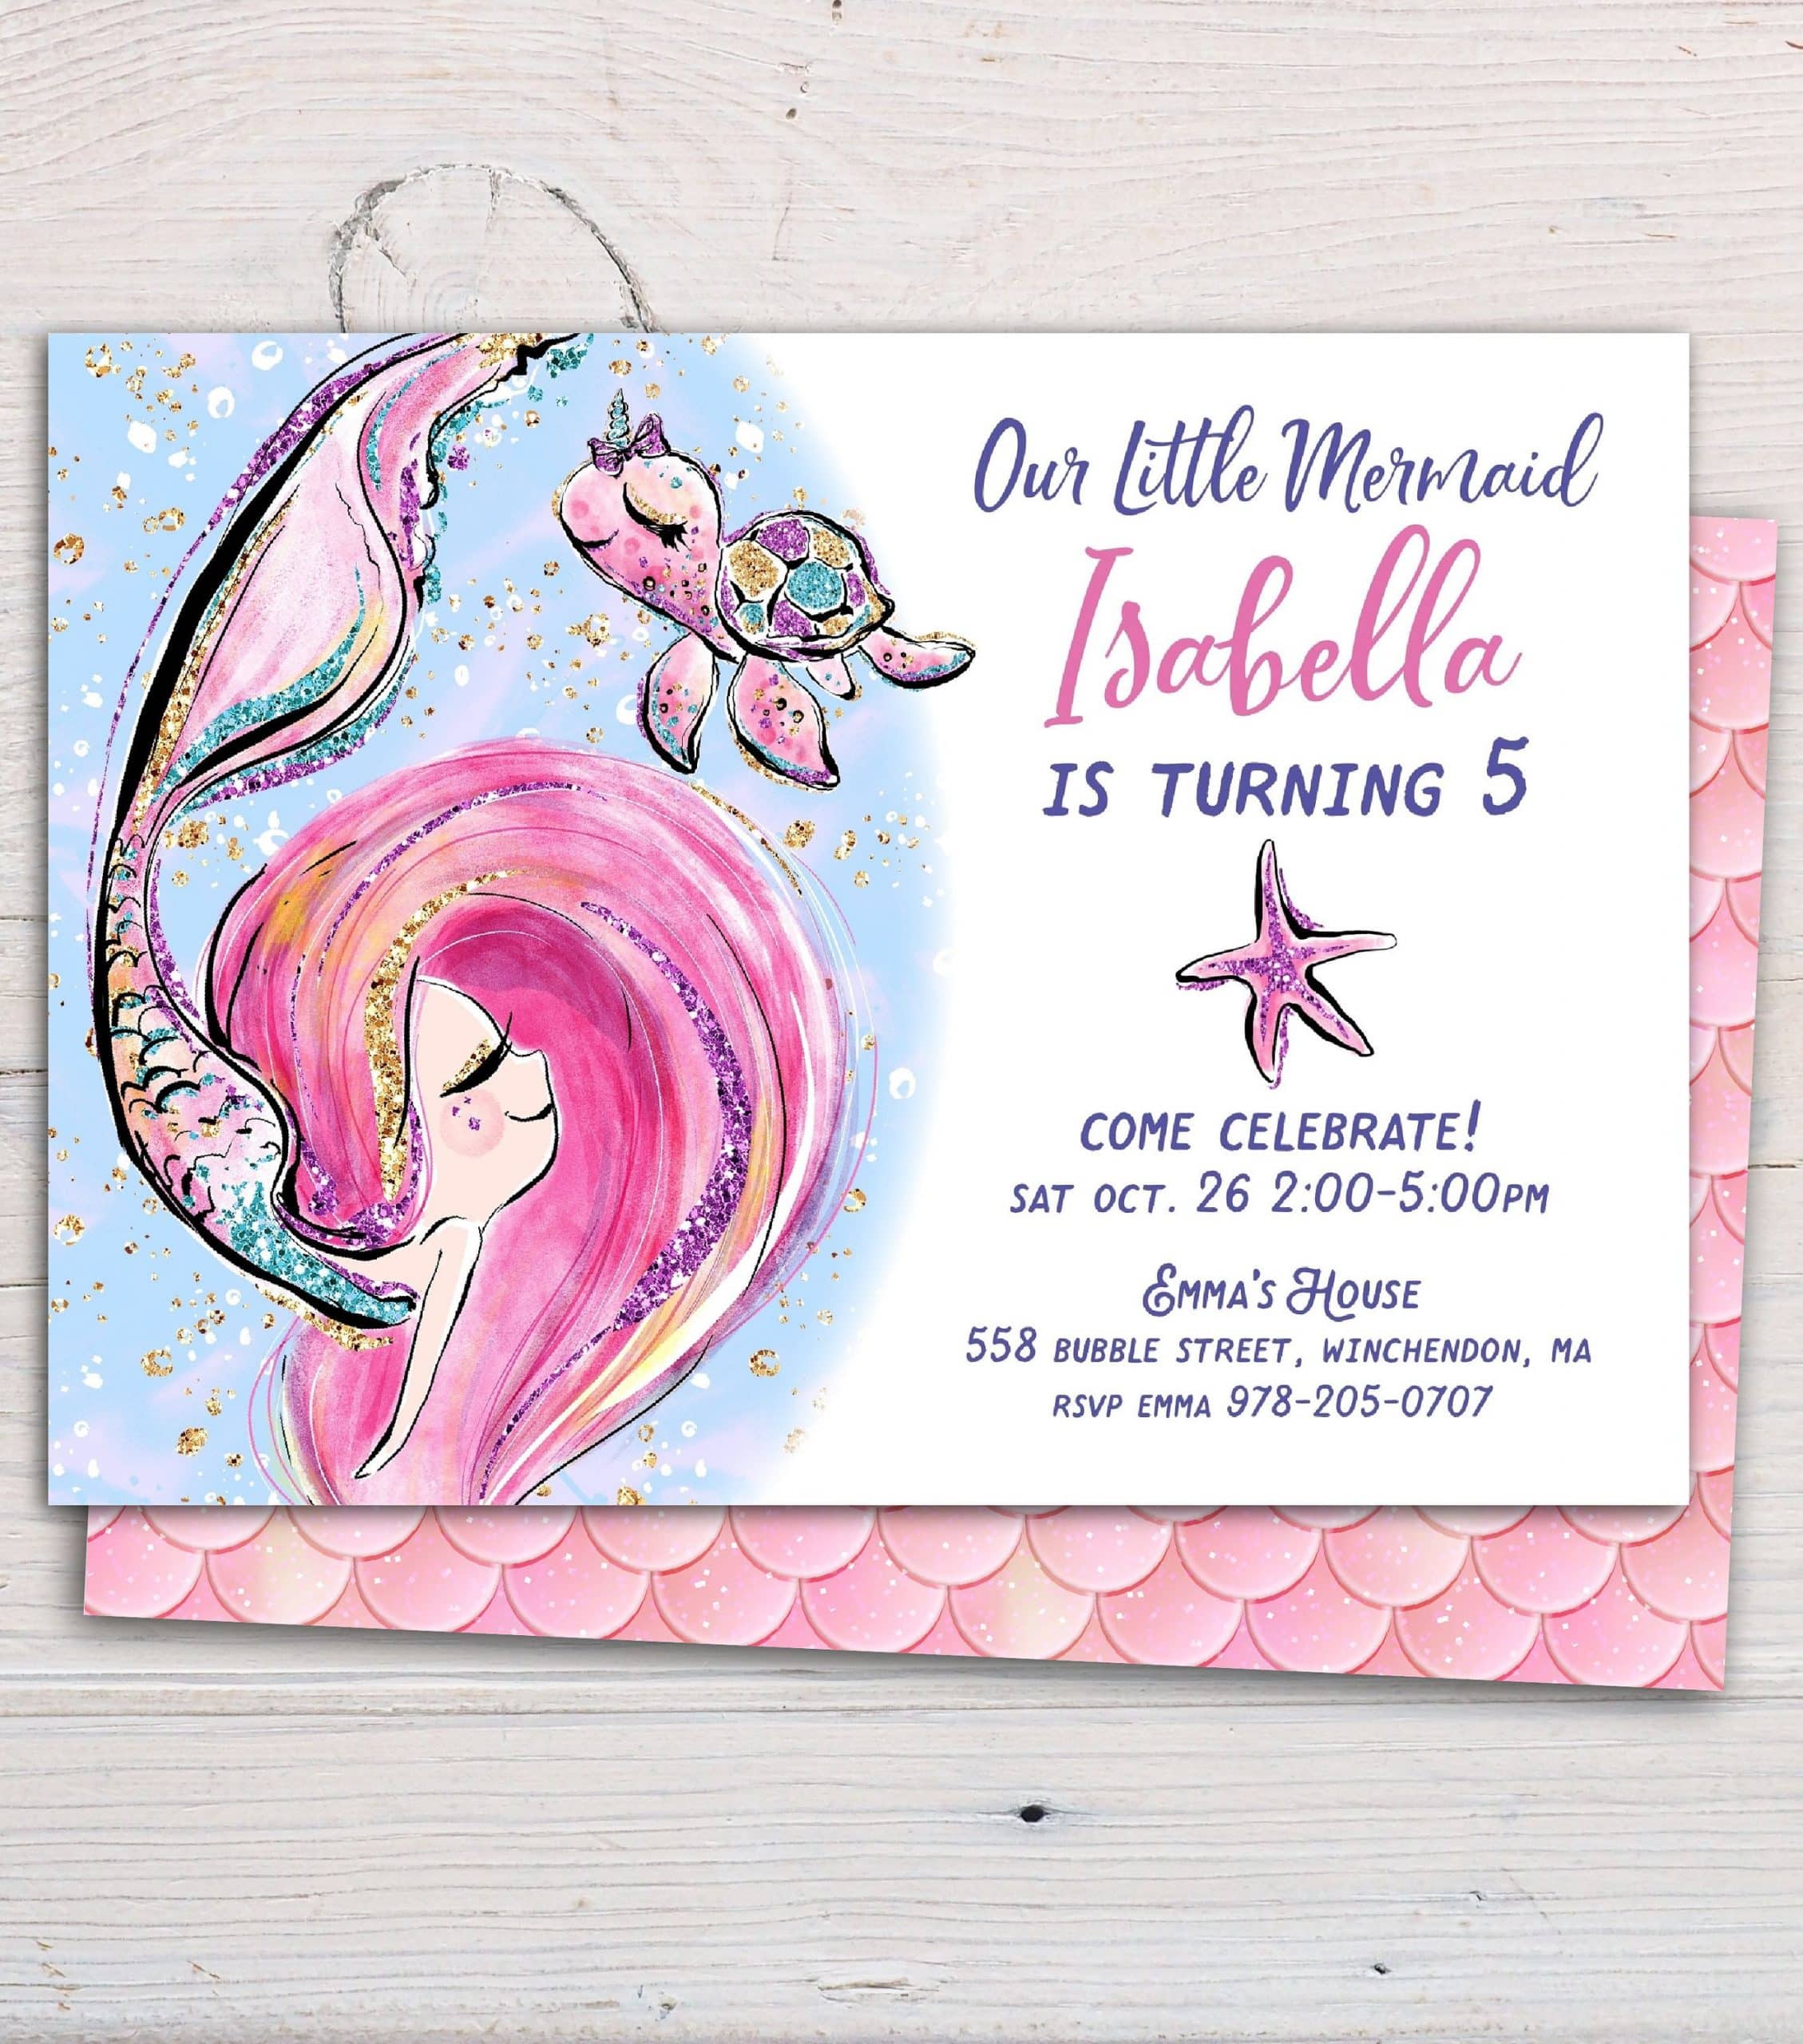 Mermaid Invitation Printable Editable Template for Birthday